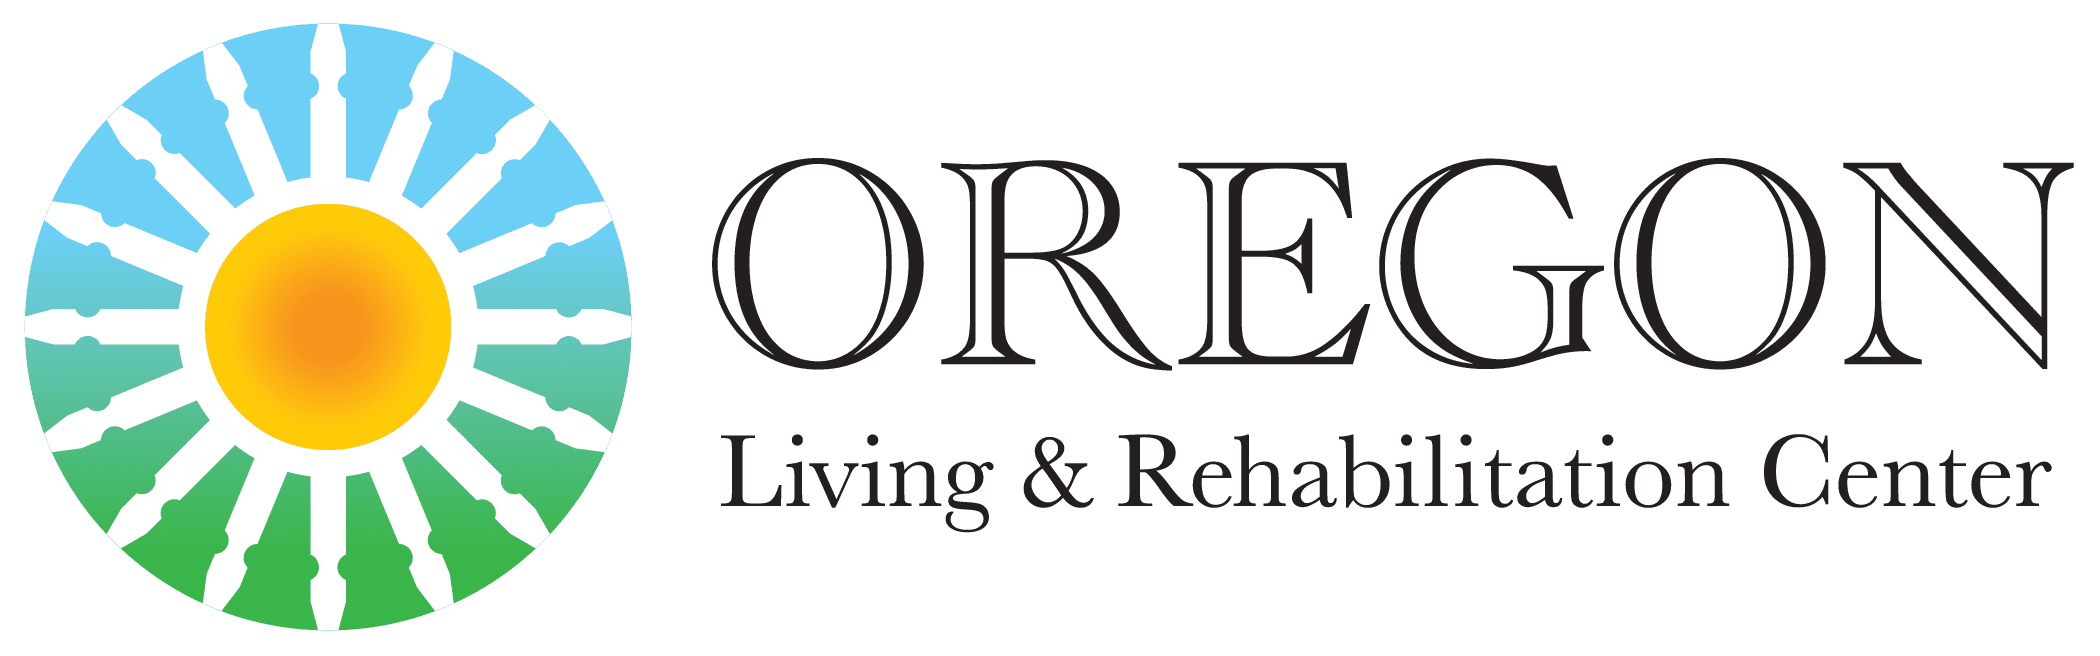 Oregon Living & Rehabilitation Center